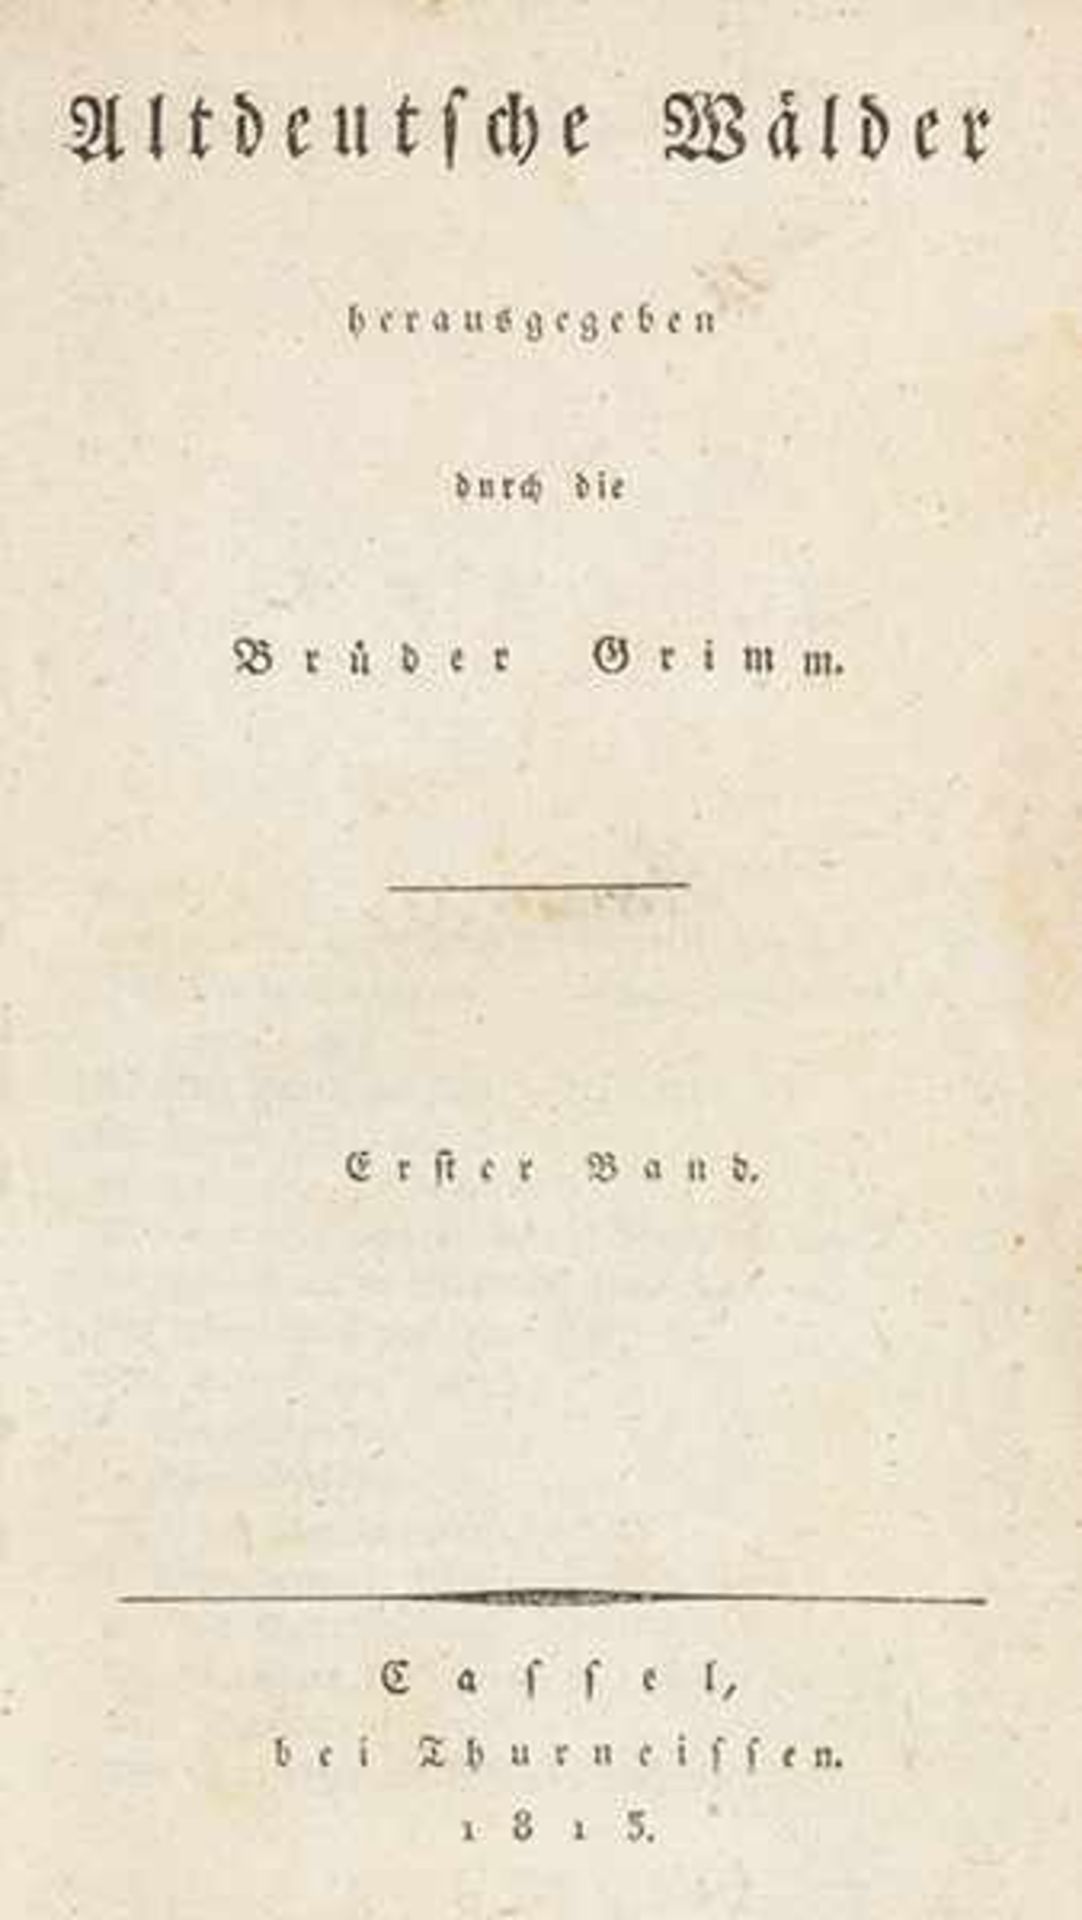 Grimm, Brüder. Altdeutsche Wälder. Herausgegeben durch die Brüder Grimm. 3 Bände. Kassel,